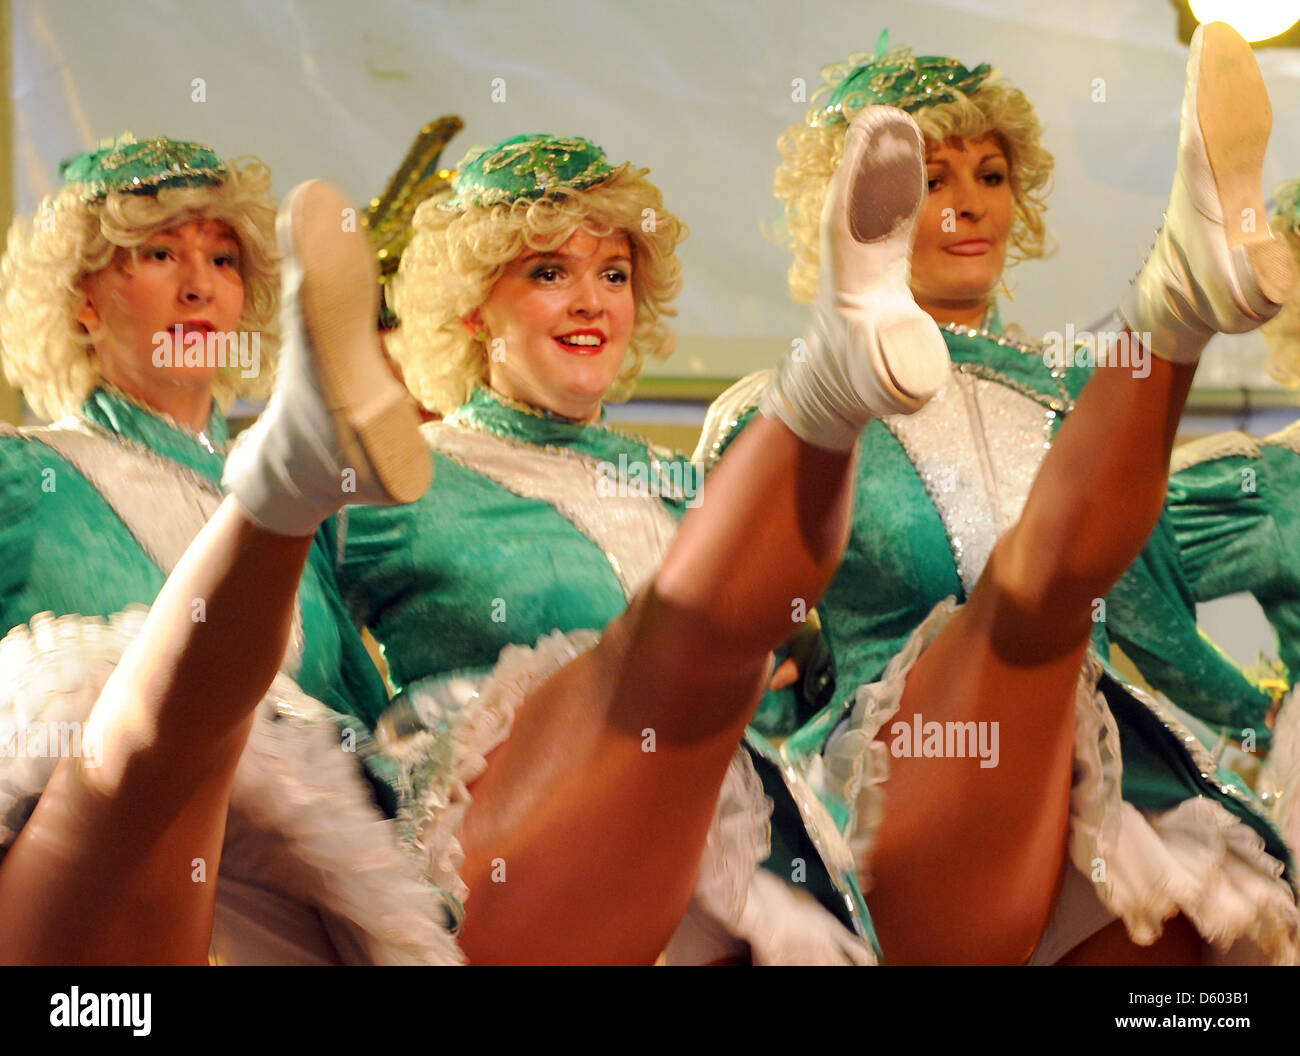 Les femmes membres de l'association carnaval de Meissen commencer la nouvelle saison de carnaval avec un retentissant cri de 'Vivat, vivat' Missnia à Meissen, Allemagne, 11 novembre 2012. L'association a été fondée il y a plus de 40 ans et est l'un des plus actifs dans la région de Thuringe. Photo : Matthias Hiekel Banque D'Images